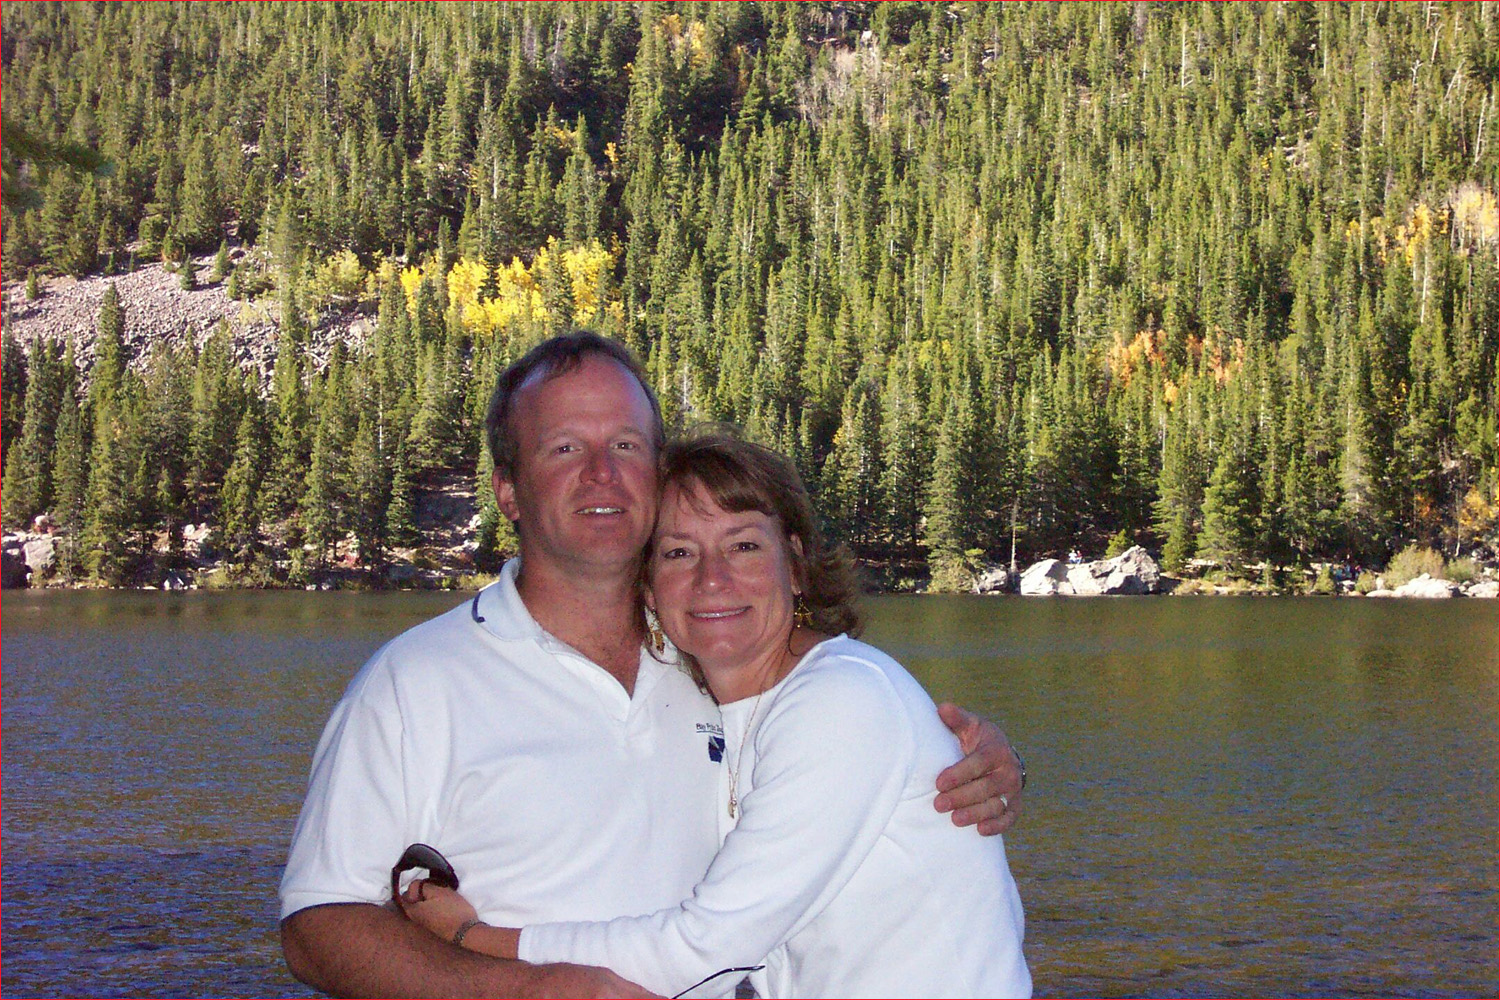 Bob and Jacquie at Bear Lake